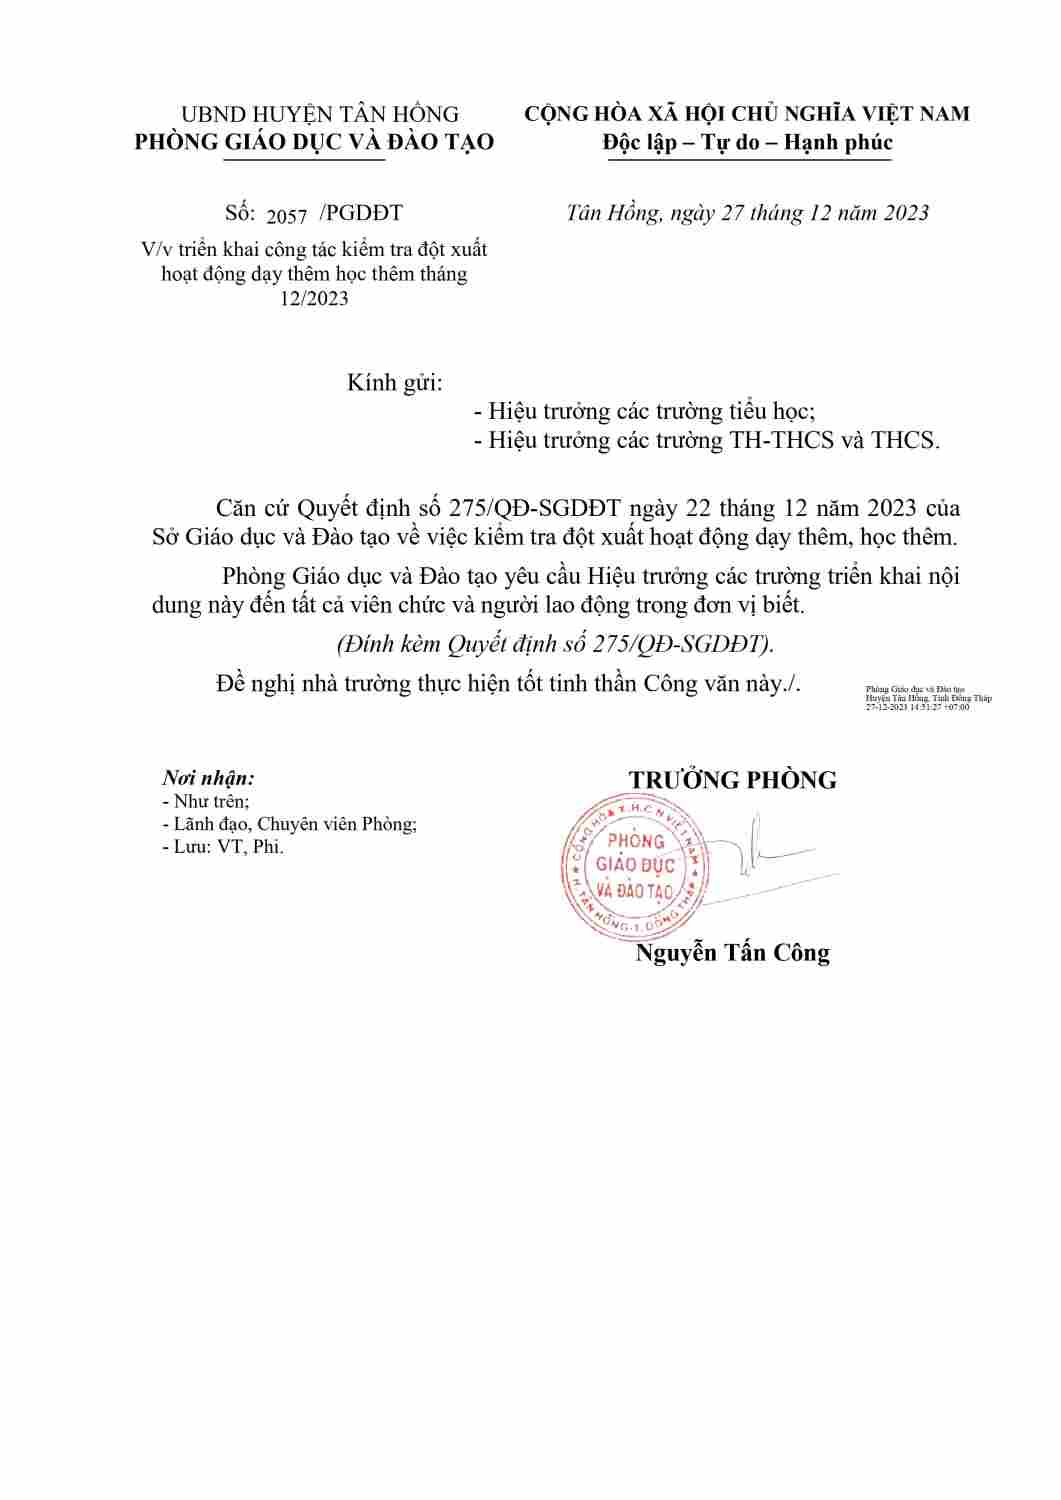 Copy of CONG VAN TRIEN KHAI VIEC KIEM TRA DOT XUAT DTHT 12-2023